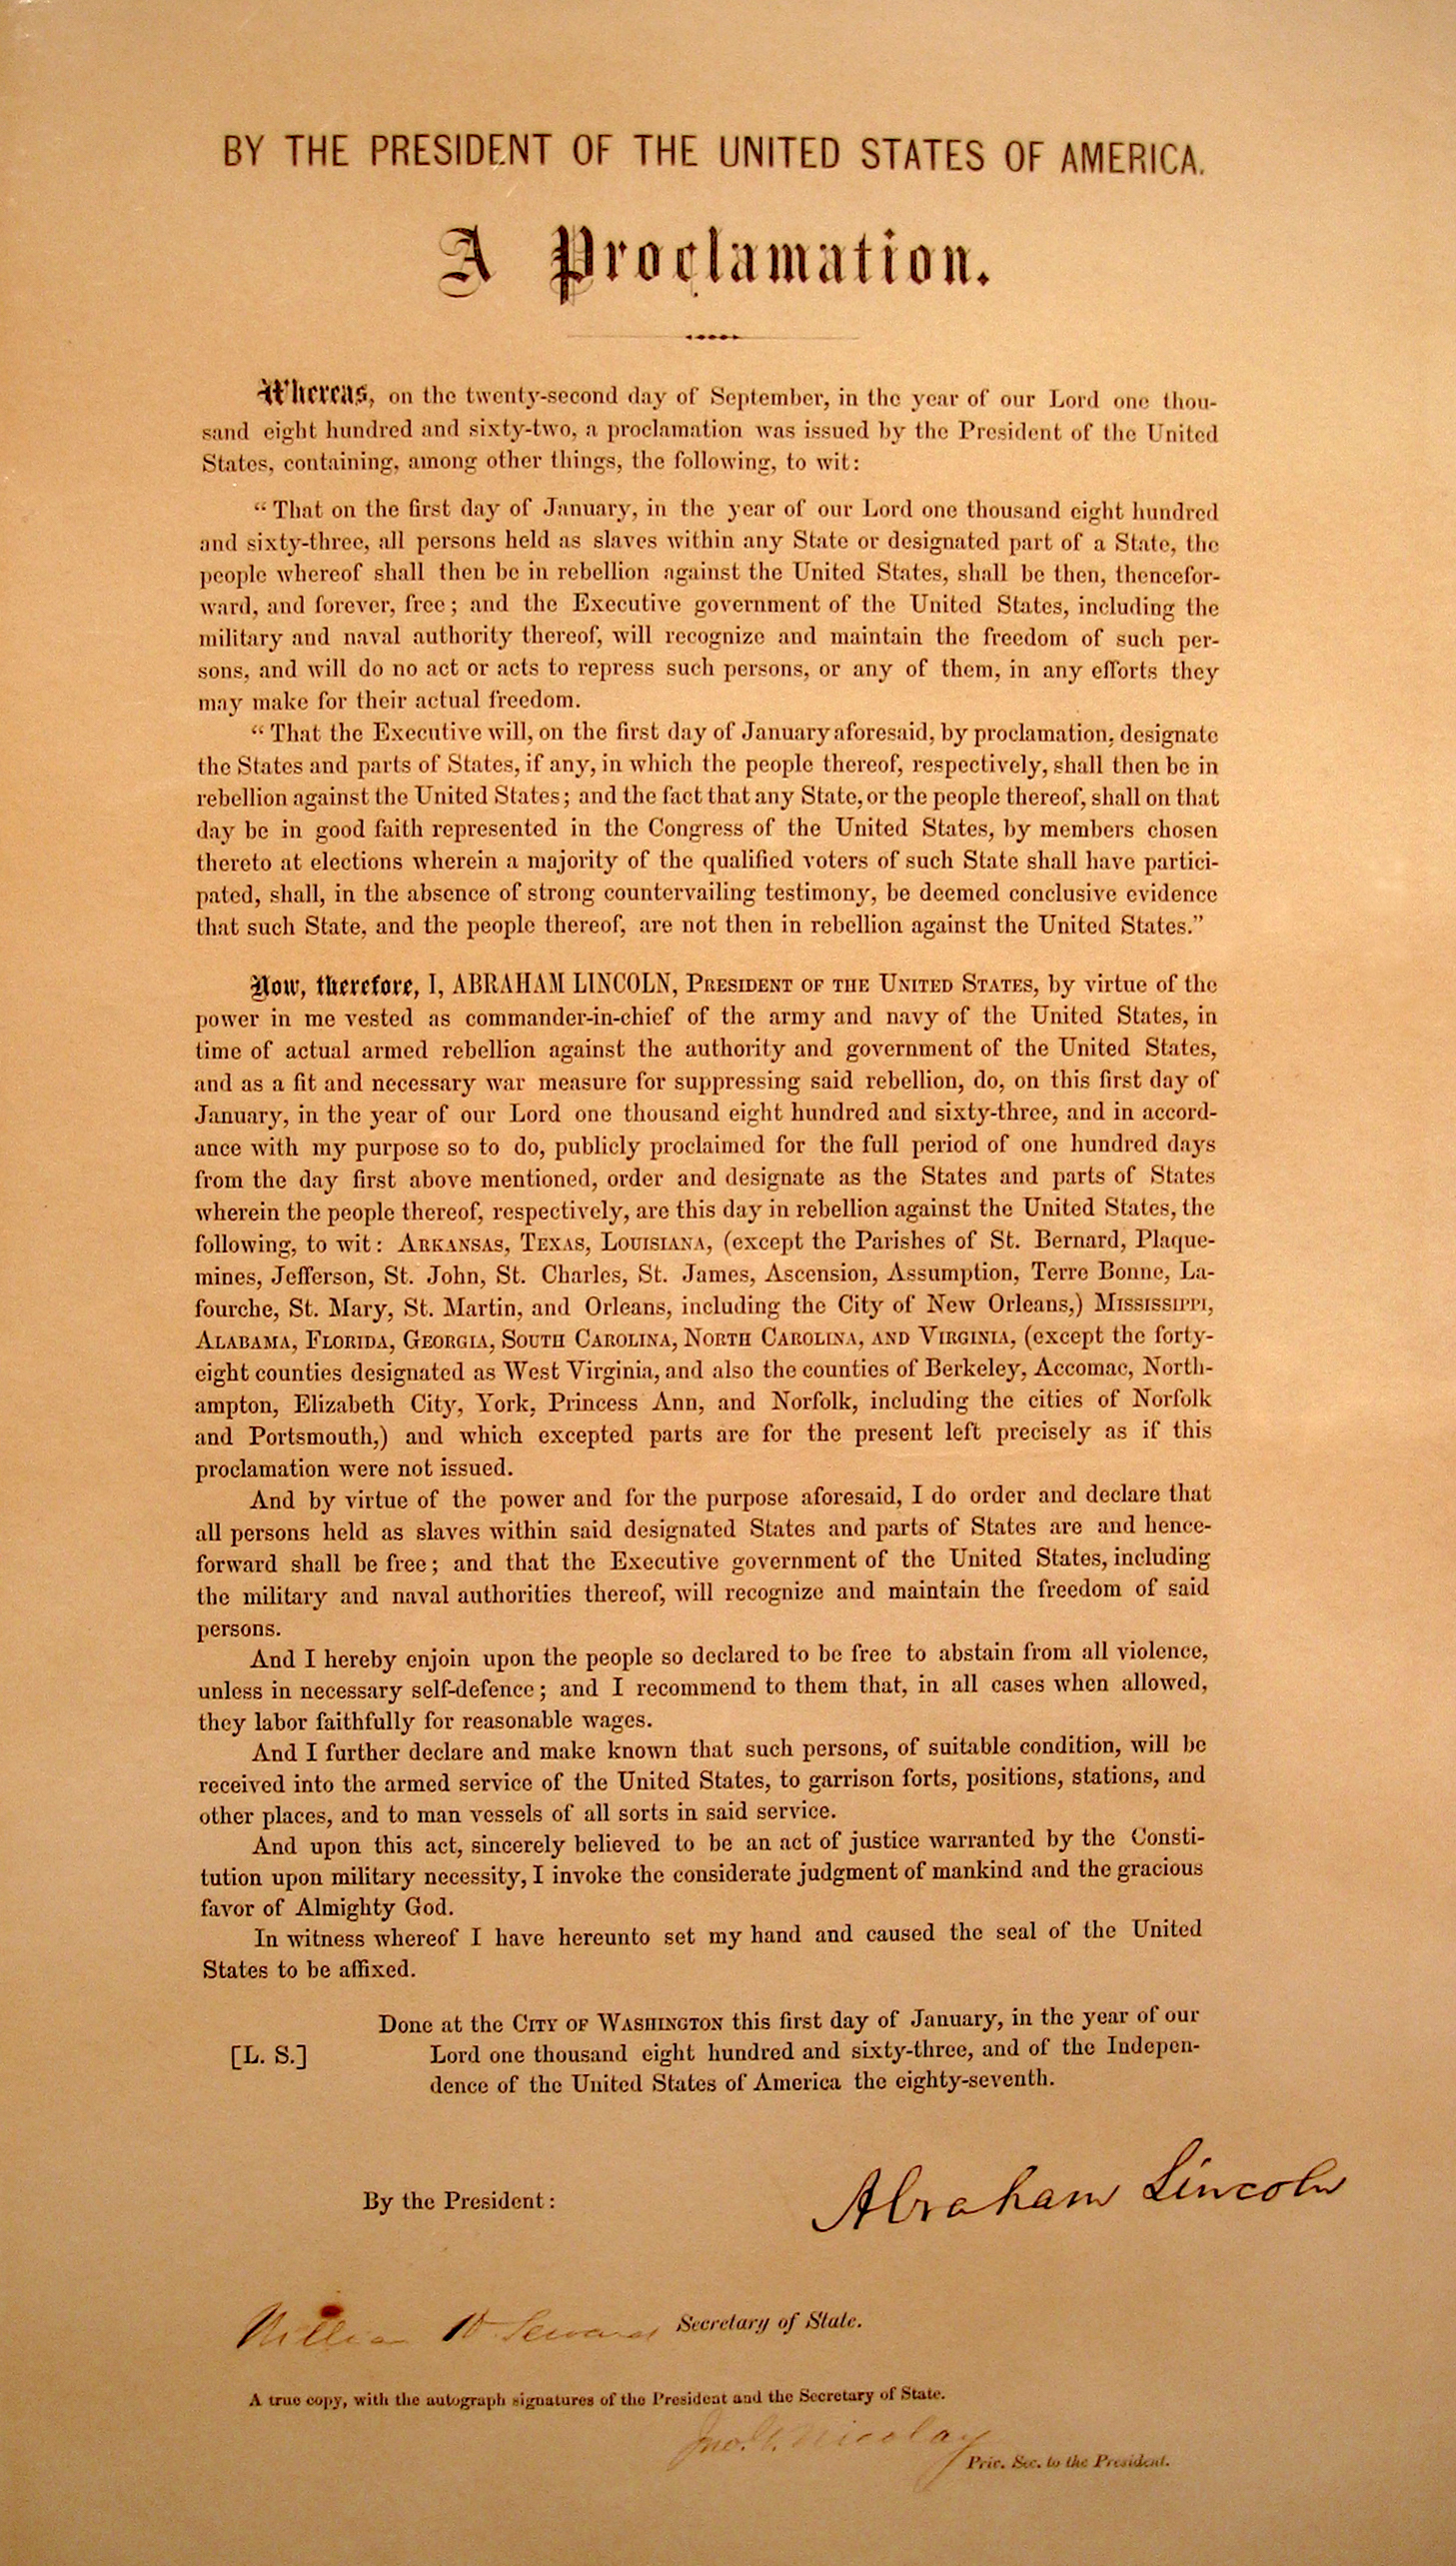 Emancipation_proclamation_typeset_signed.jpg